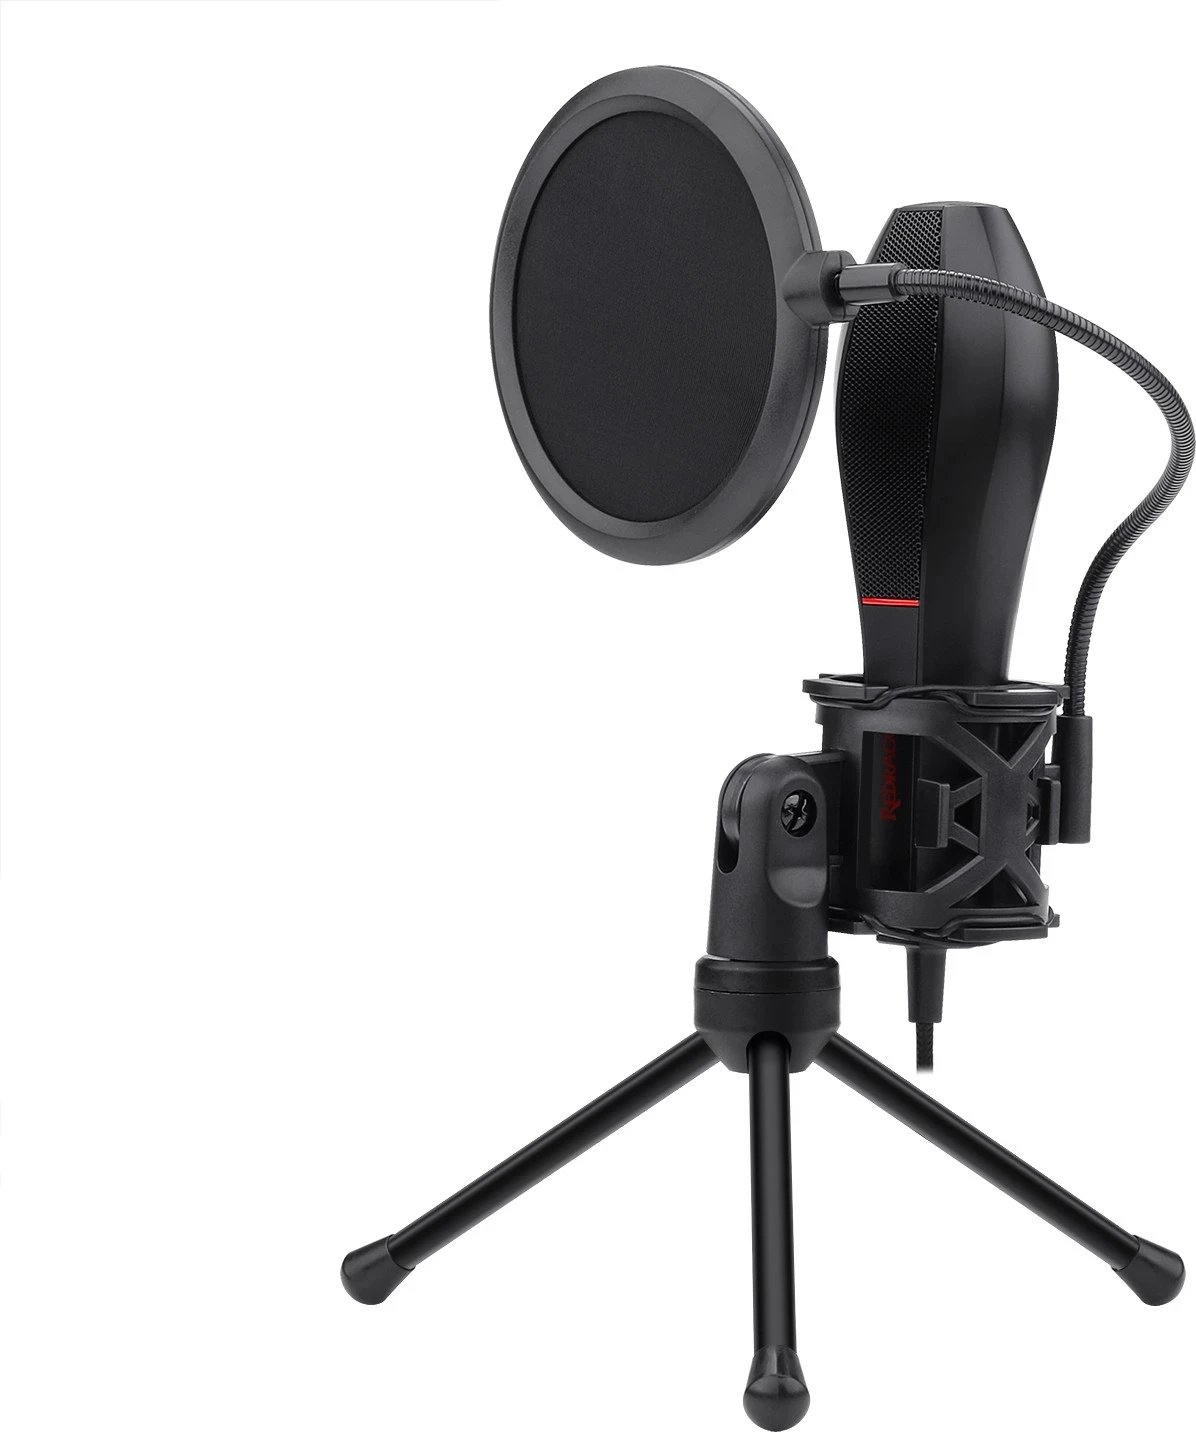 Mikrofon për lojëra Redragon Quasar GM200-1, i zi me të kuqe